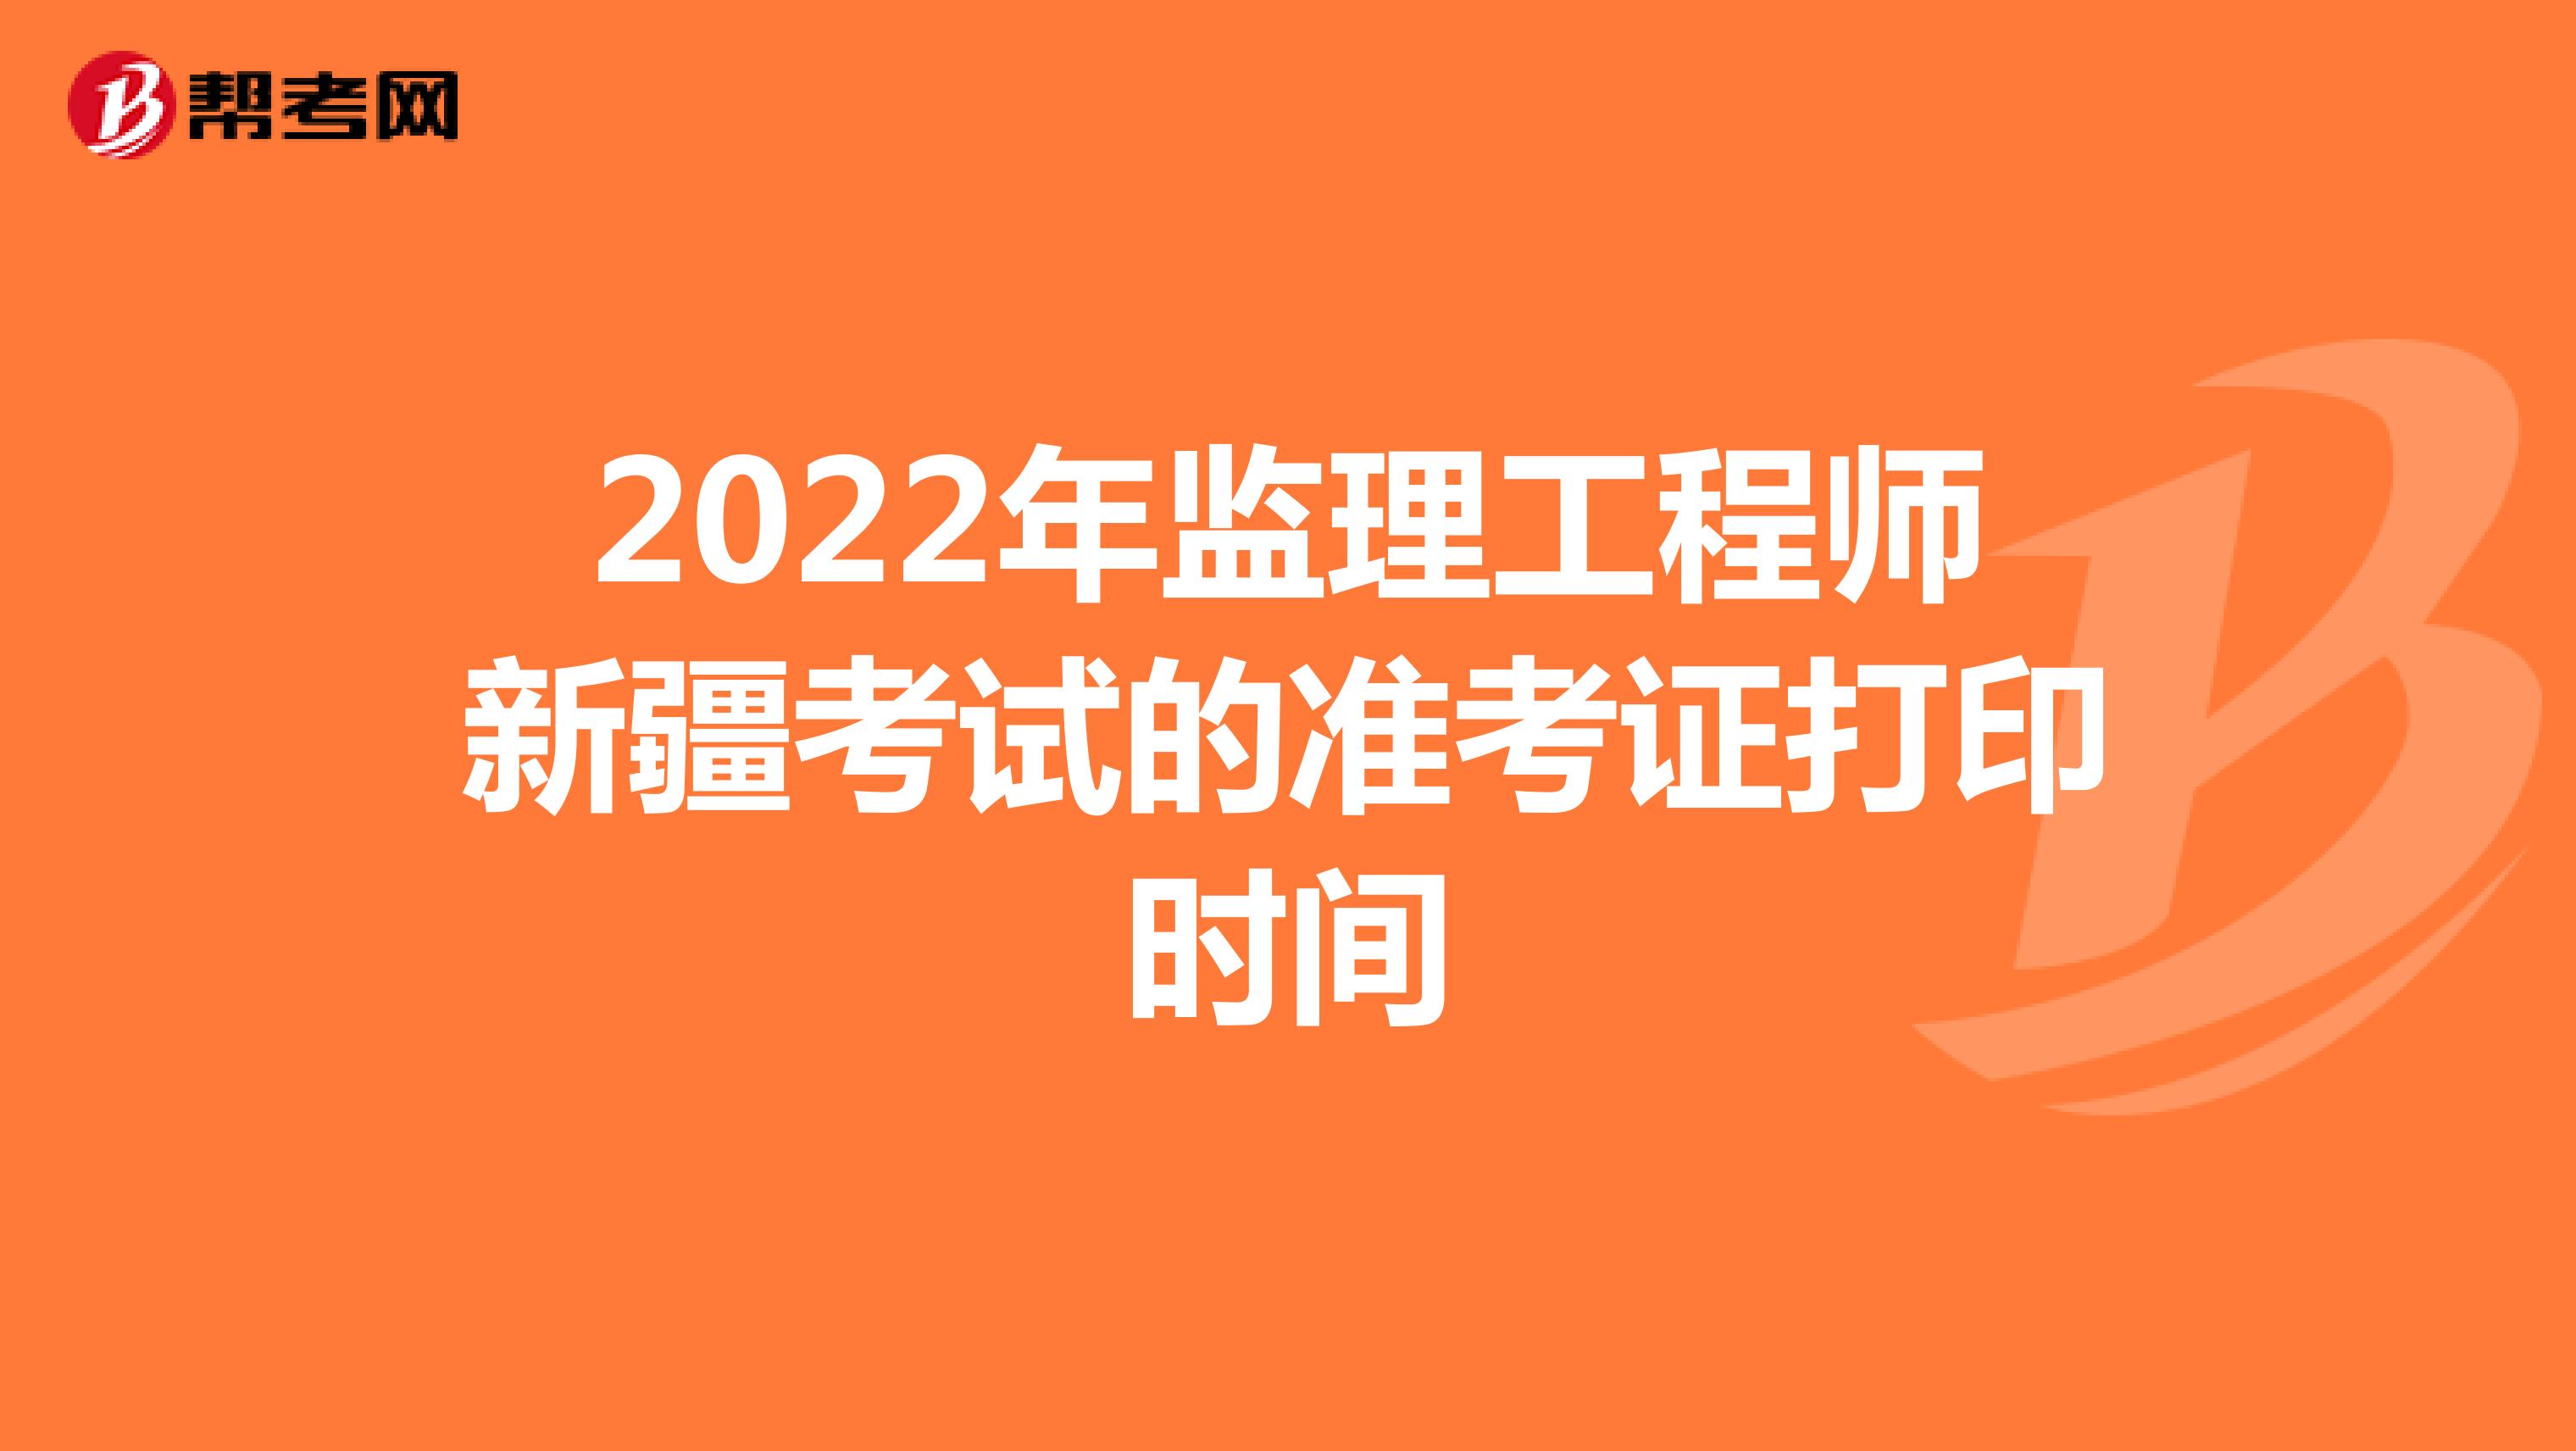 2022年监理工程师新疆考试的准考证打印时间